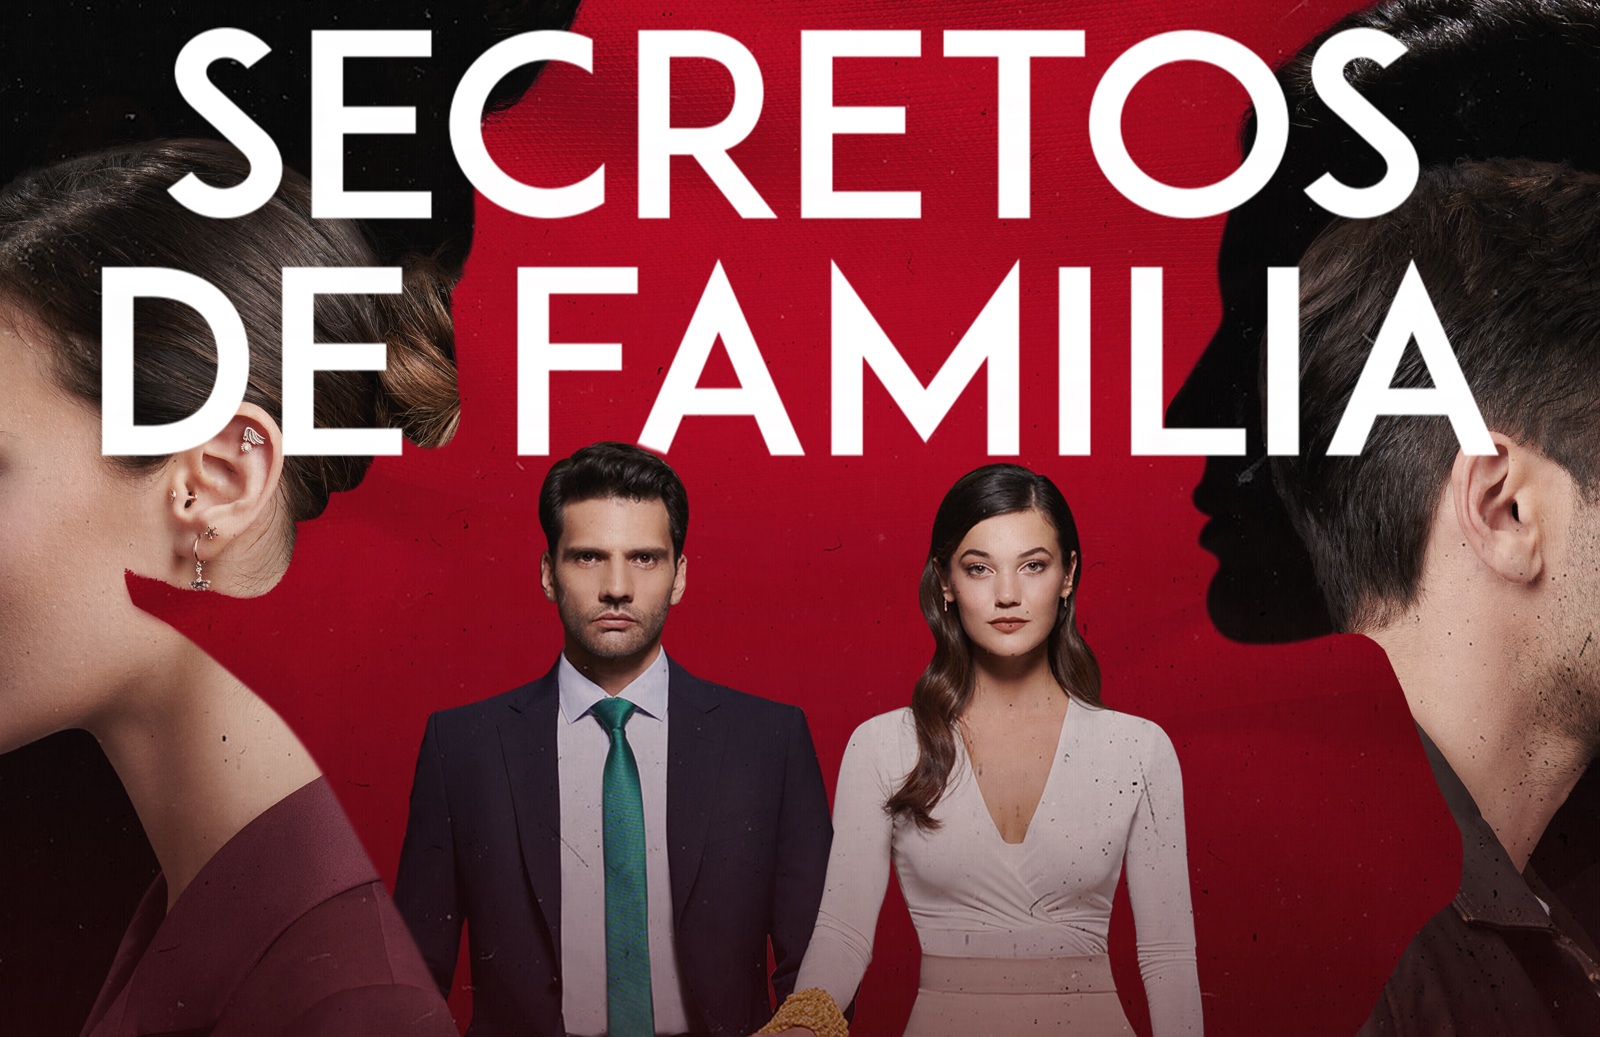 Los nuevos personajes que están revolucionando Secretos de familia en su segunda temporada